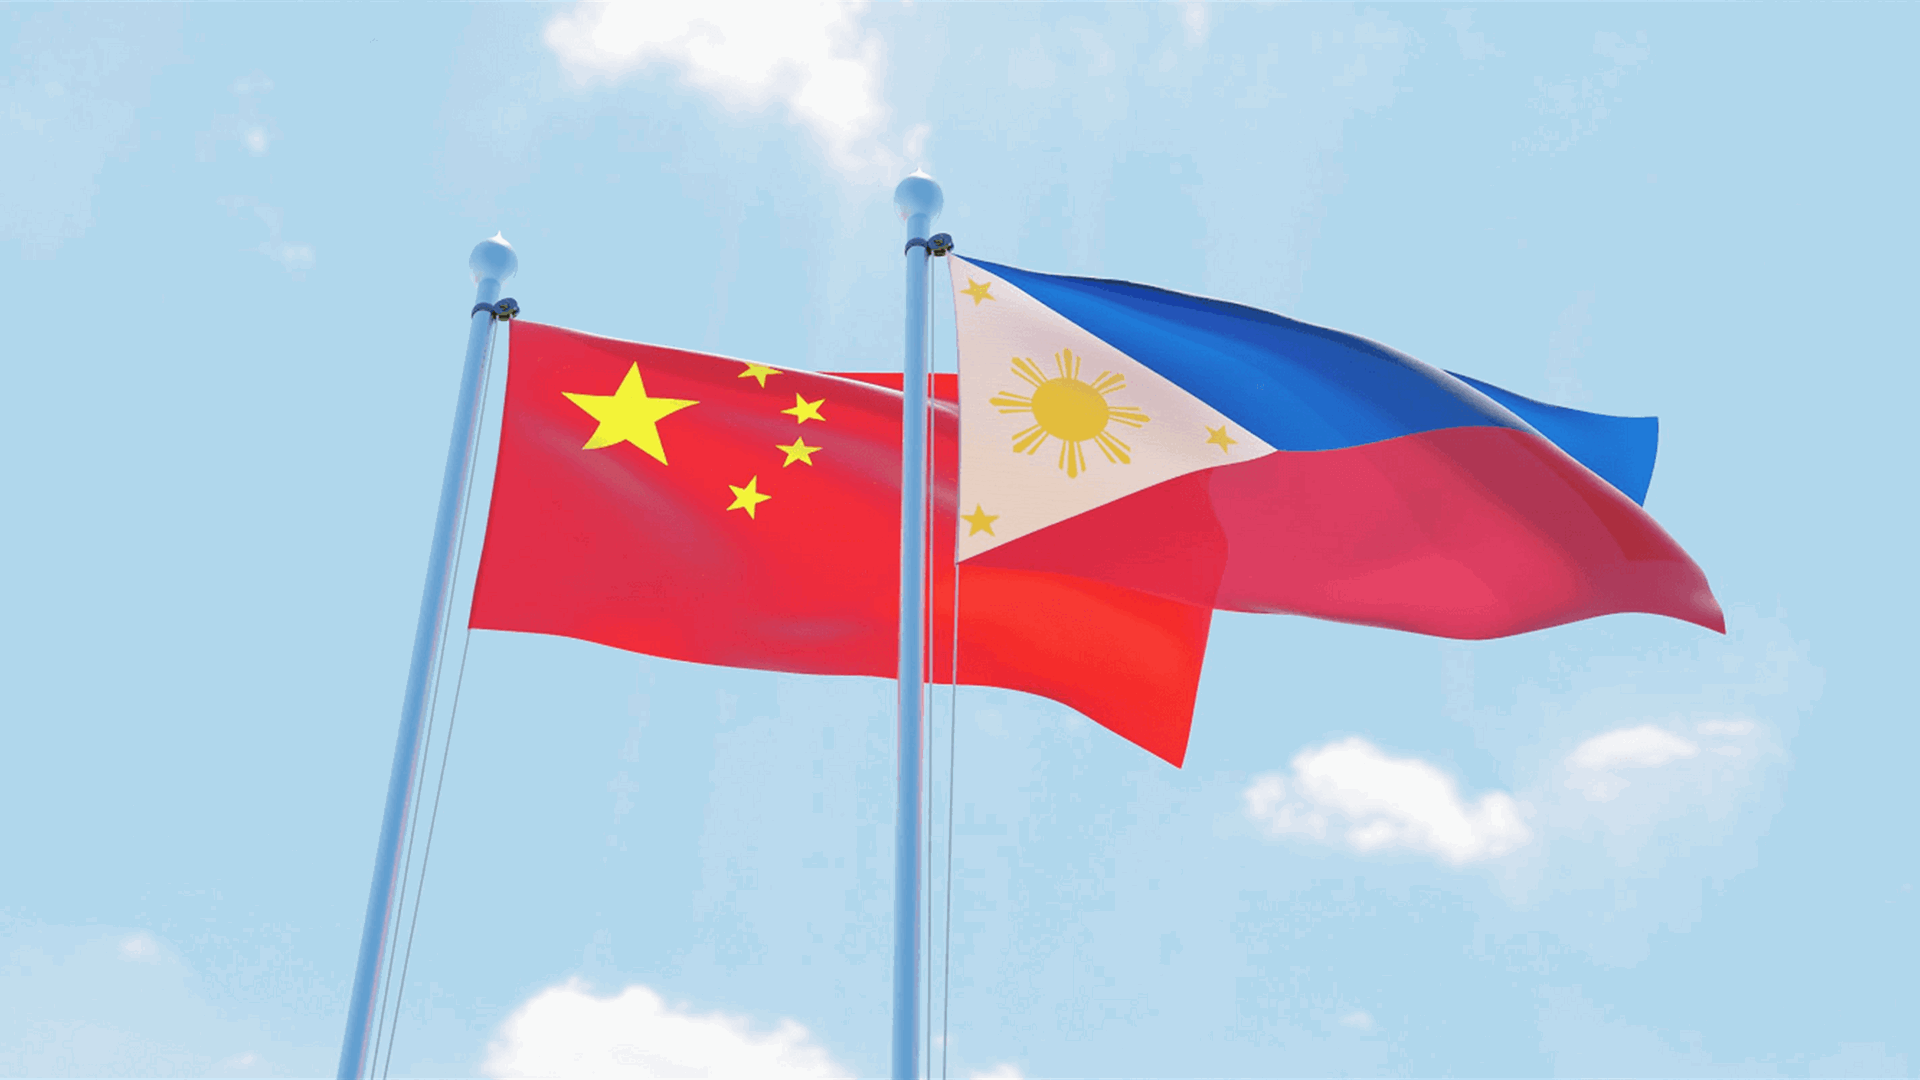 الفلبين تستدعي دبلوماسيا صينيا على خلفية توتر ببحر الصين الجنوبي